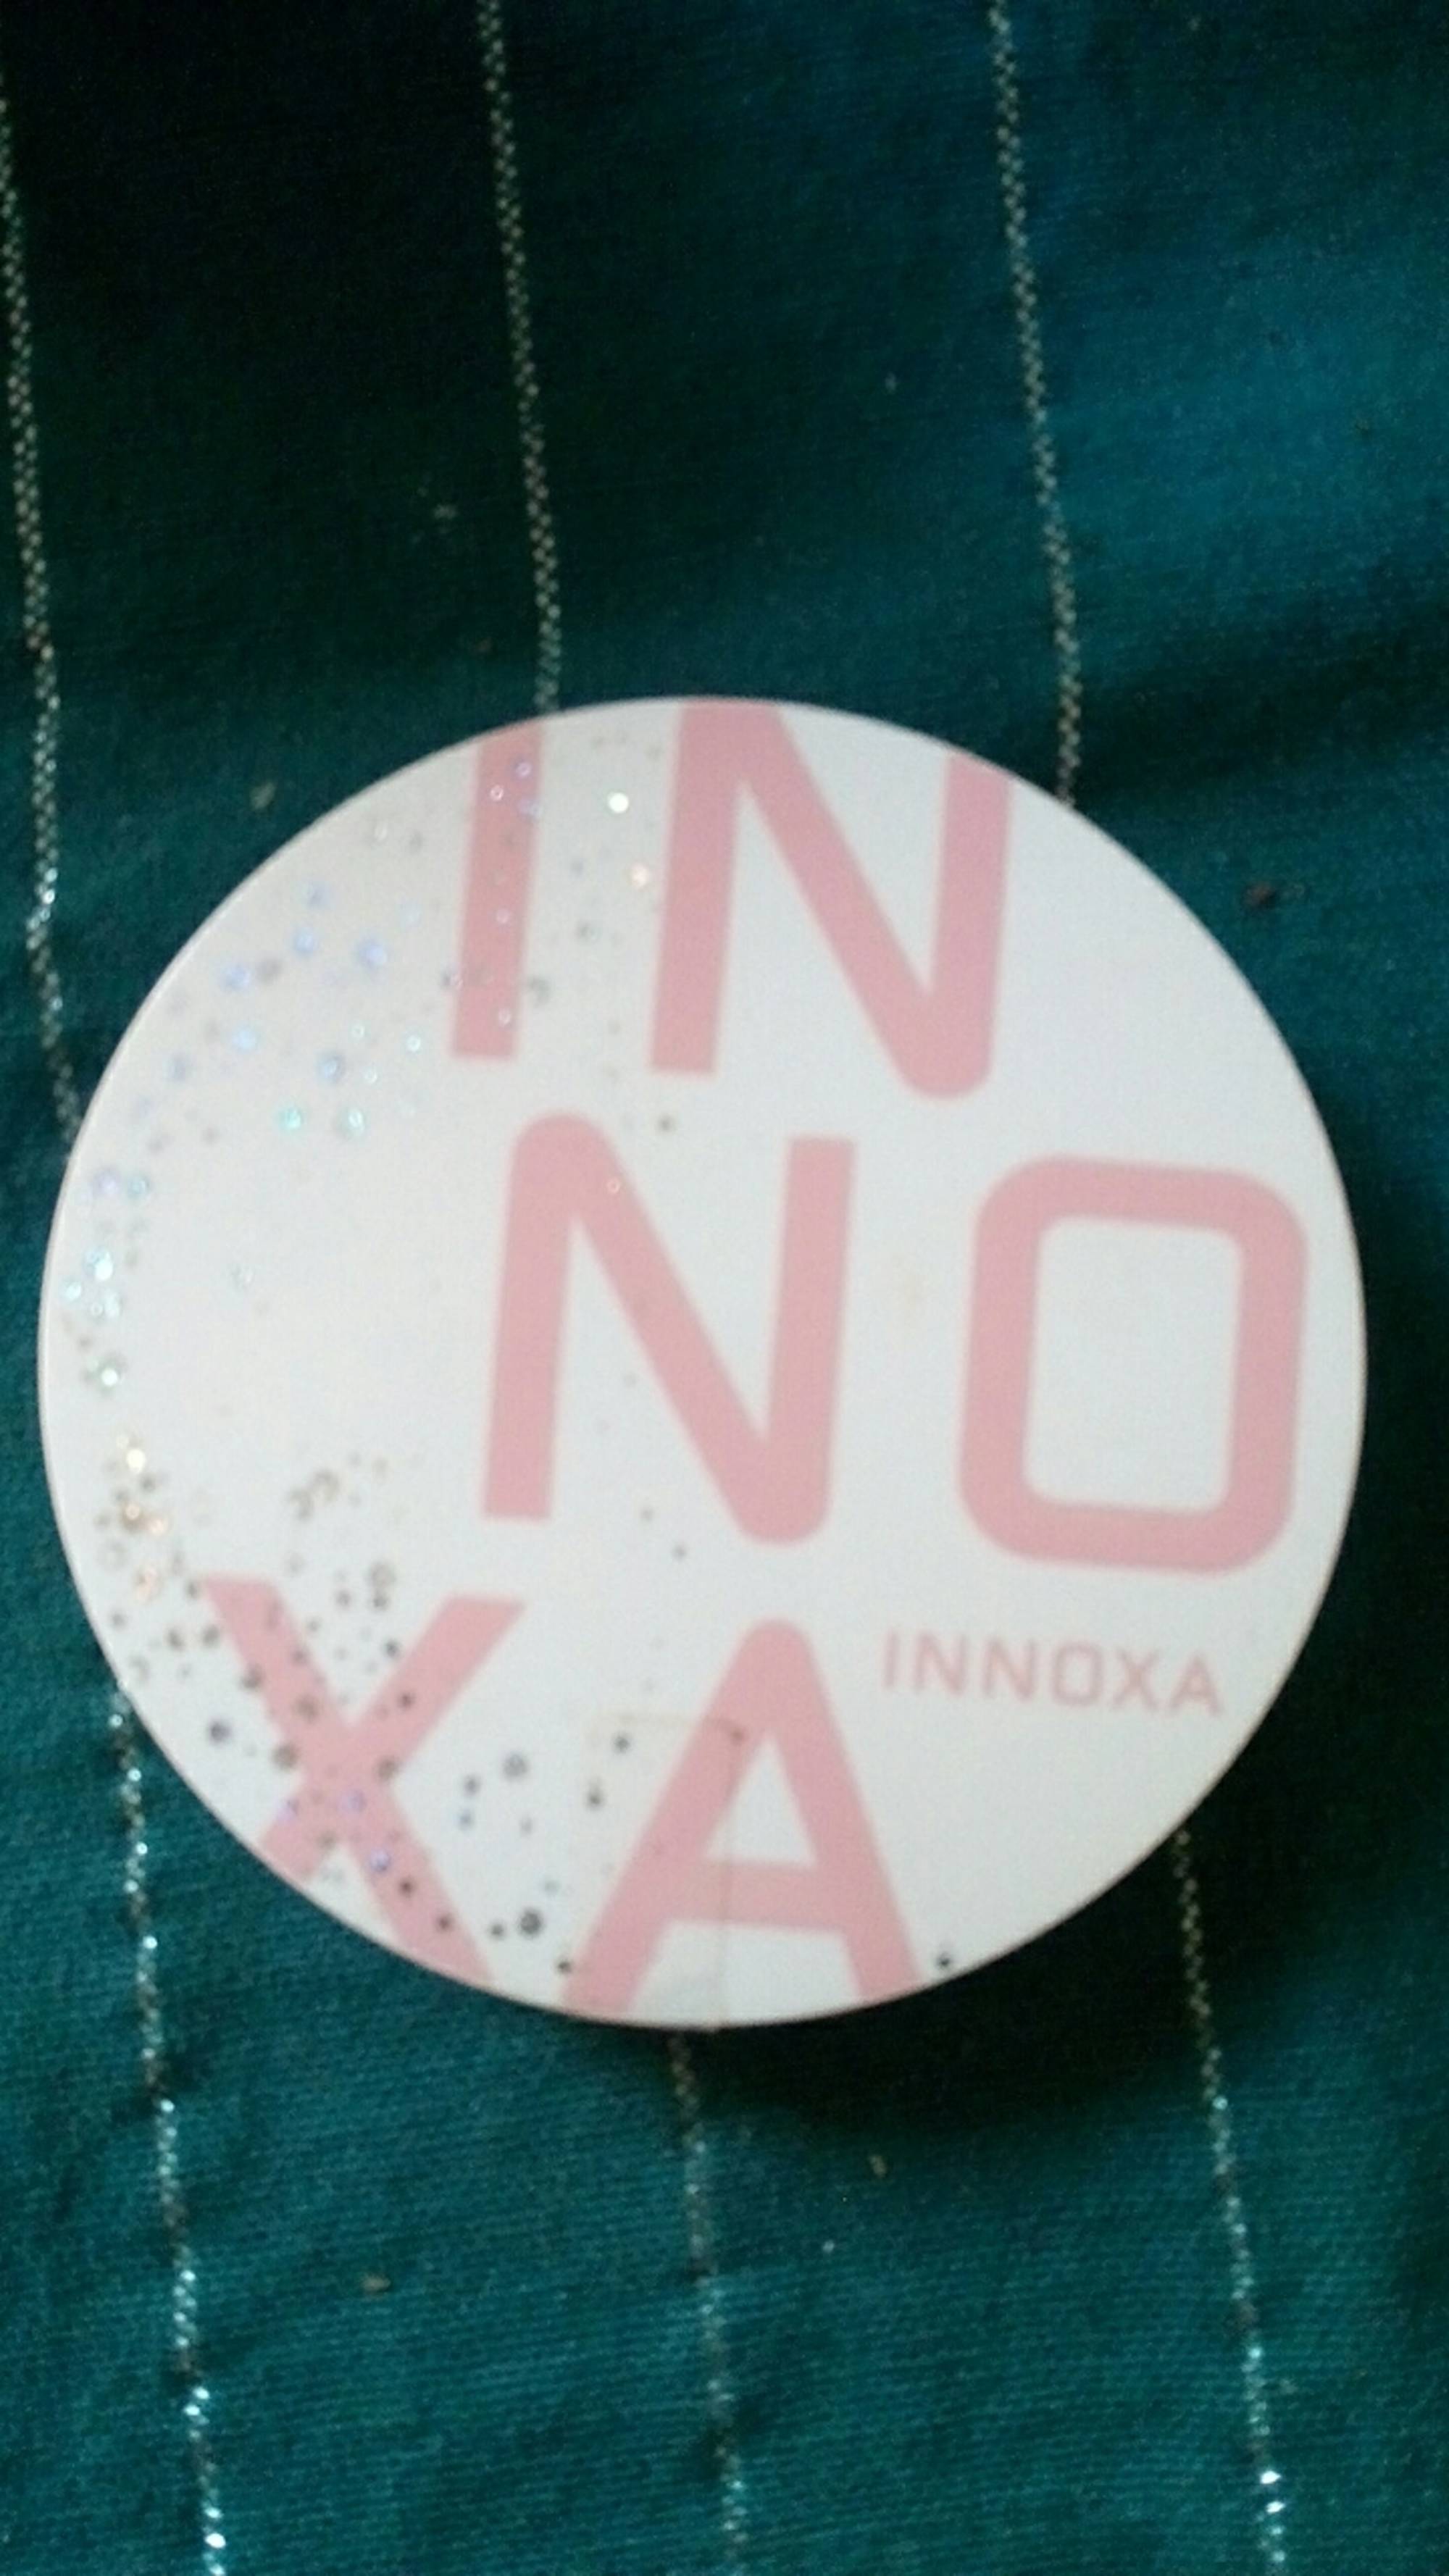 INNOXA - Poudre or rose